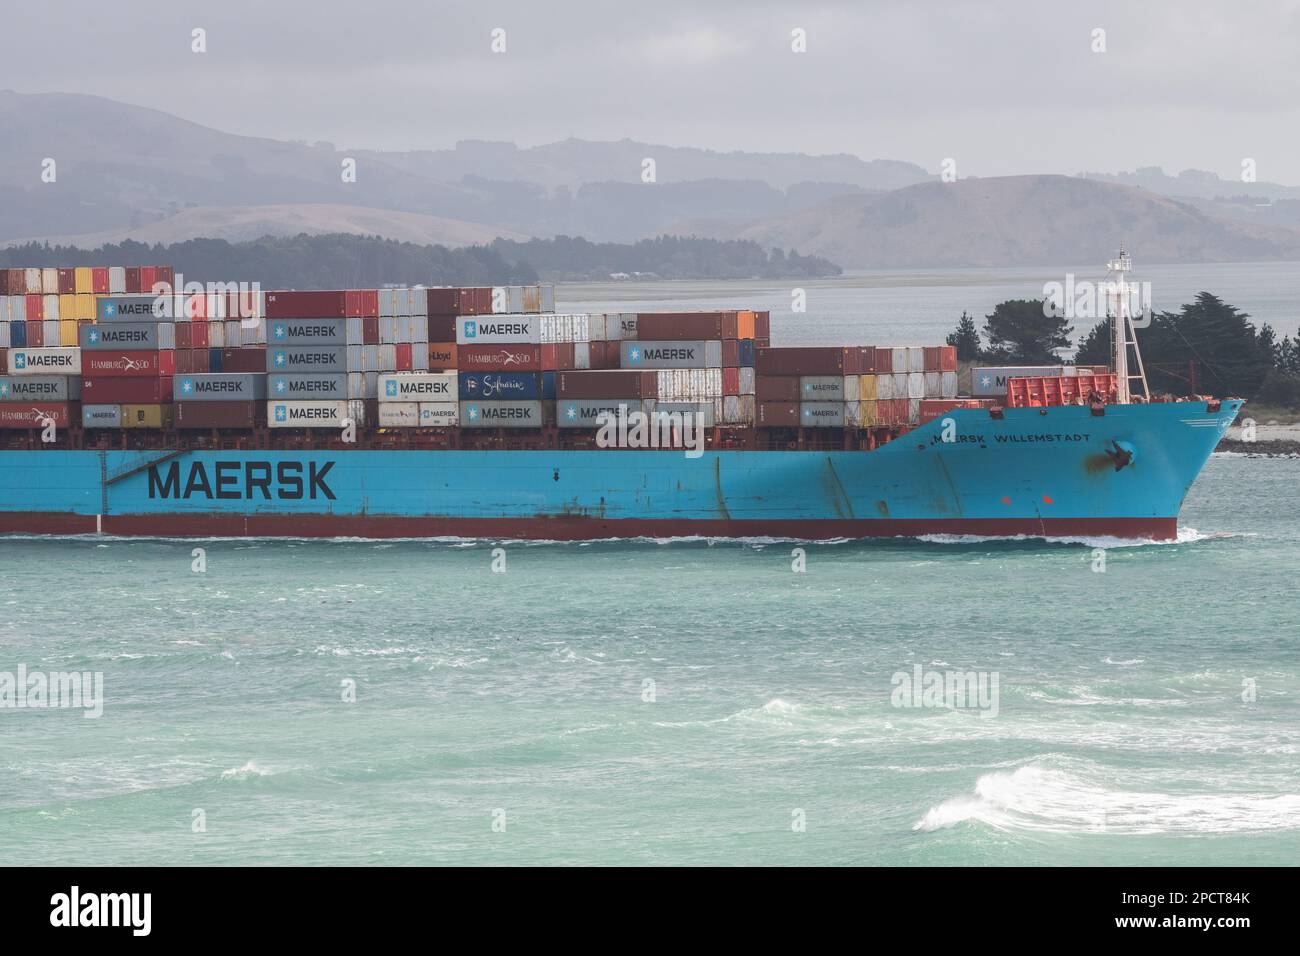 Un cargo chargé traverse une baie de l'île sud d'Aotearoa, en Nouvelle-Zélande. Banque D'Images